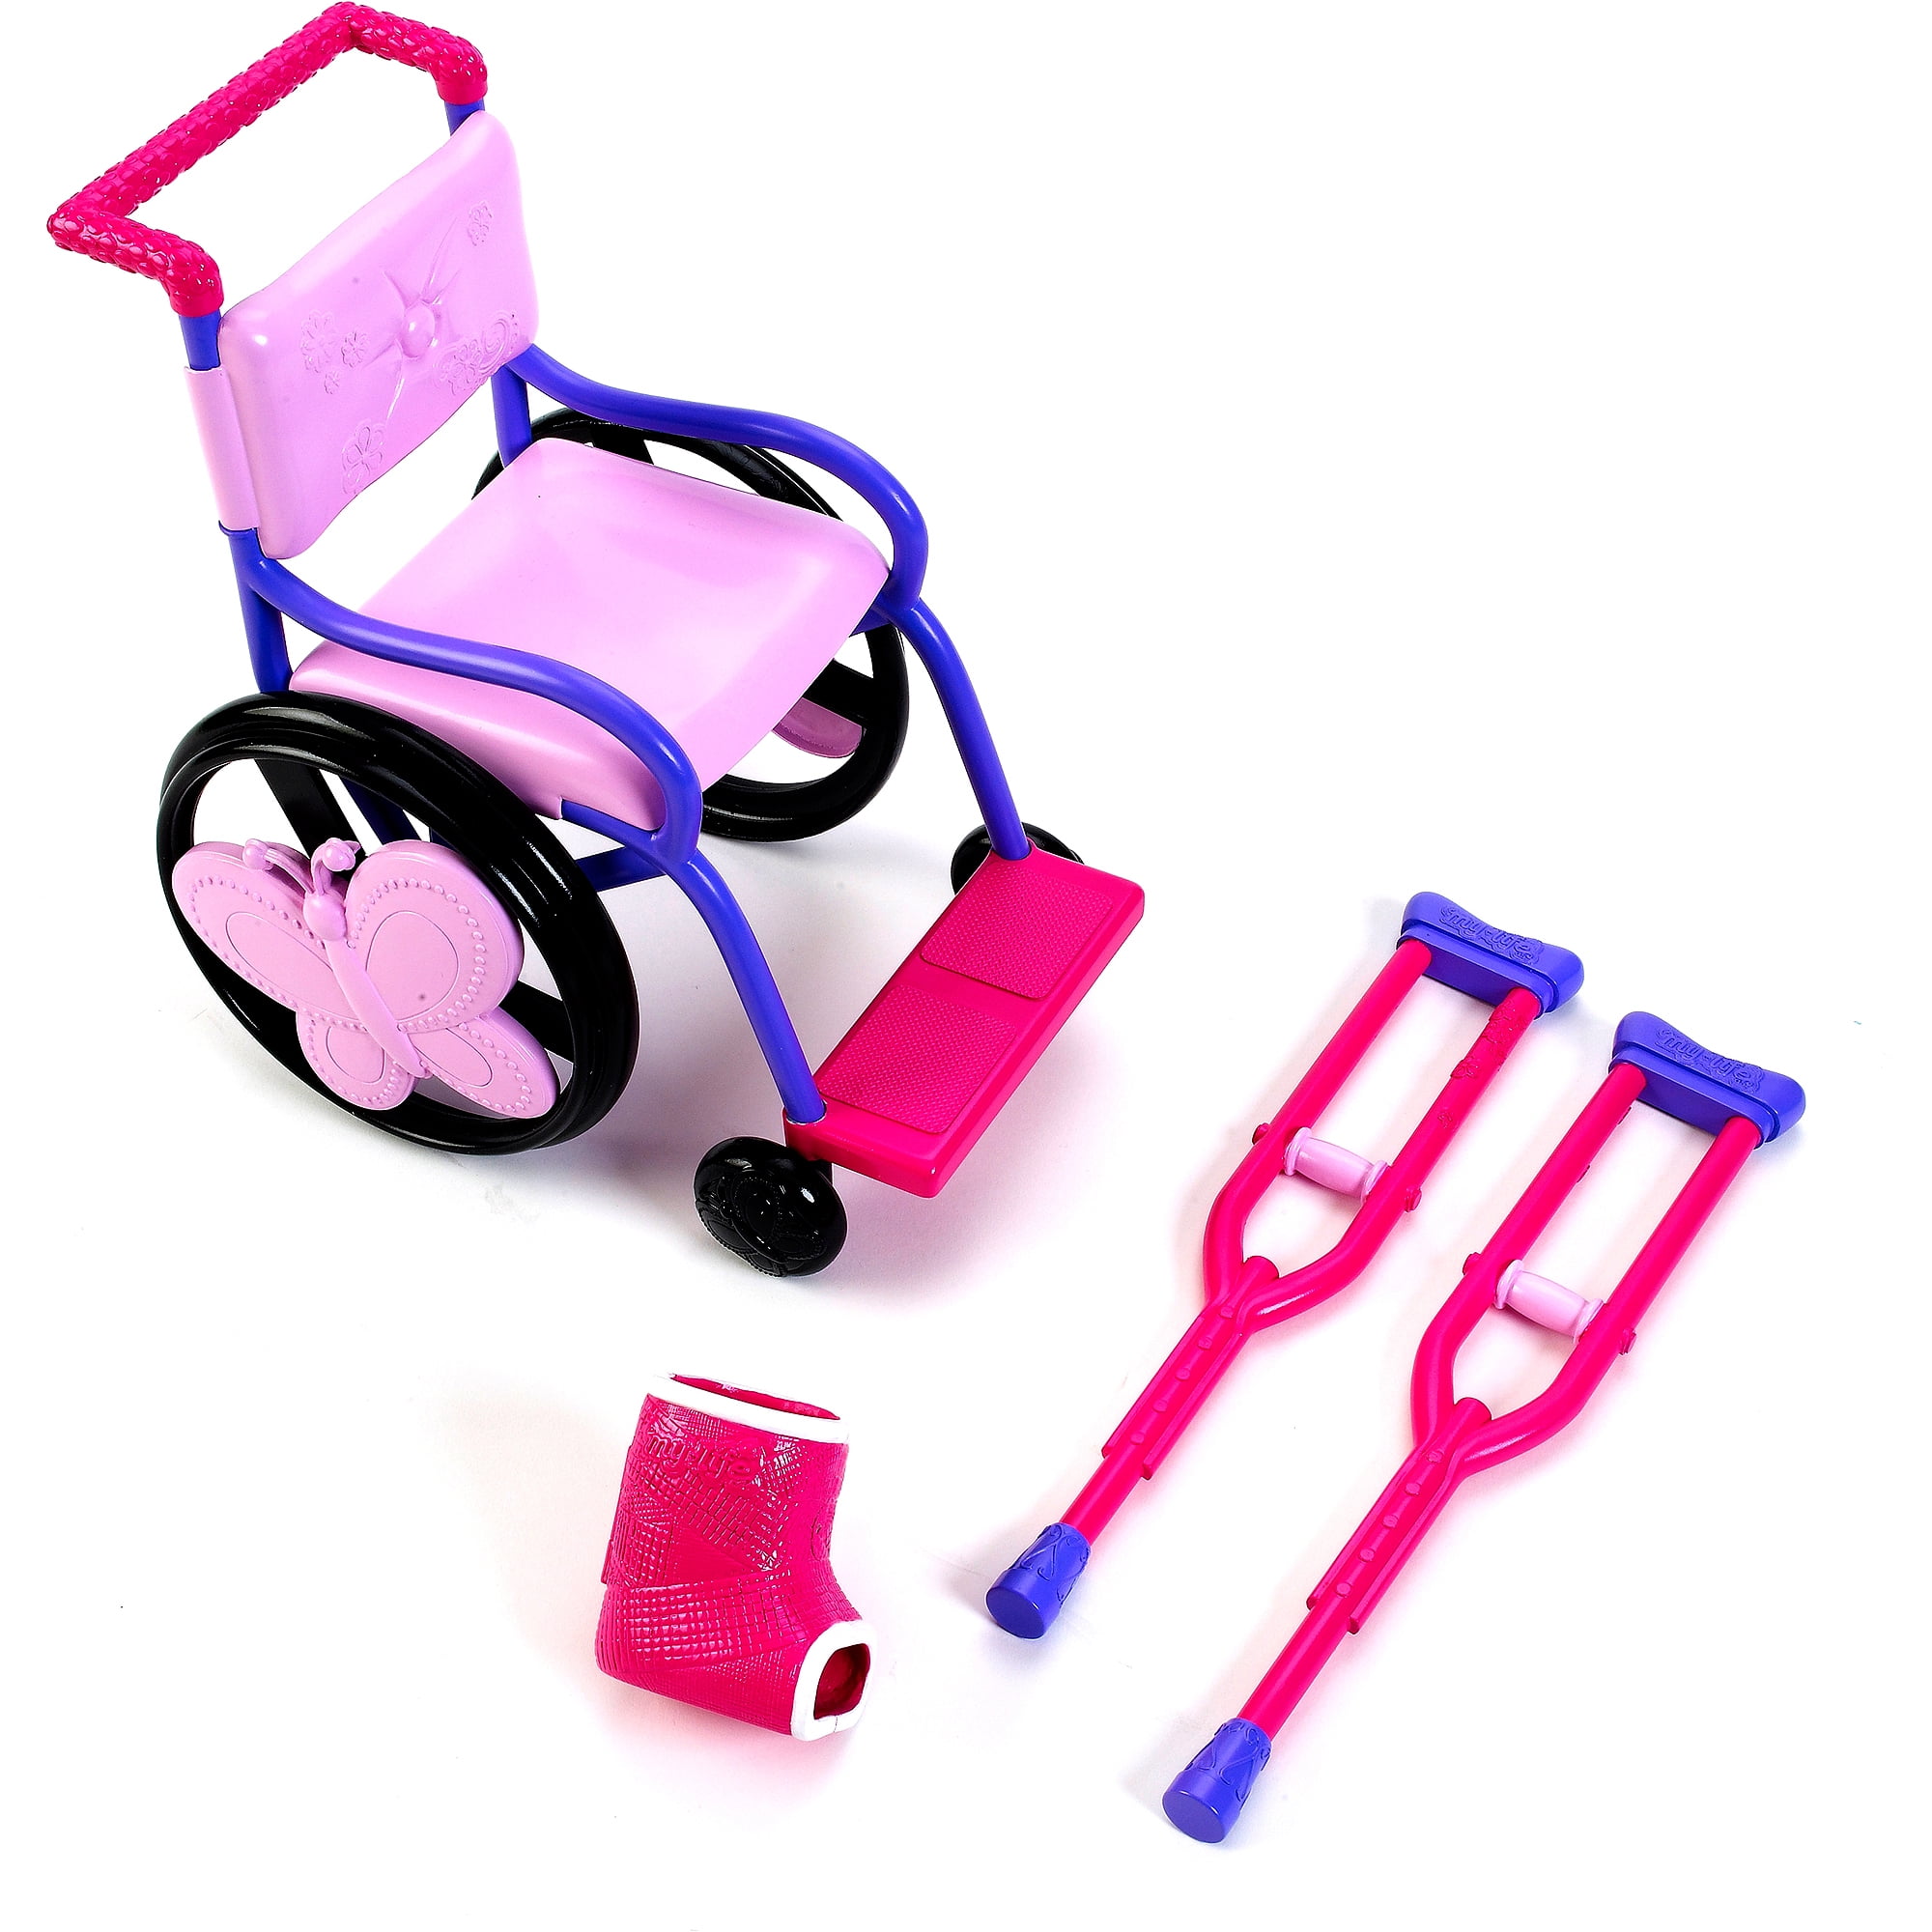 doll in a wheelchair